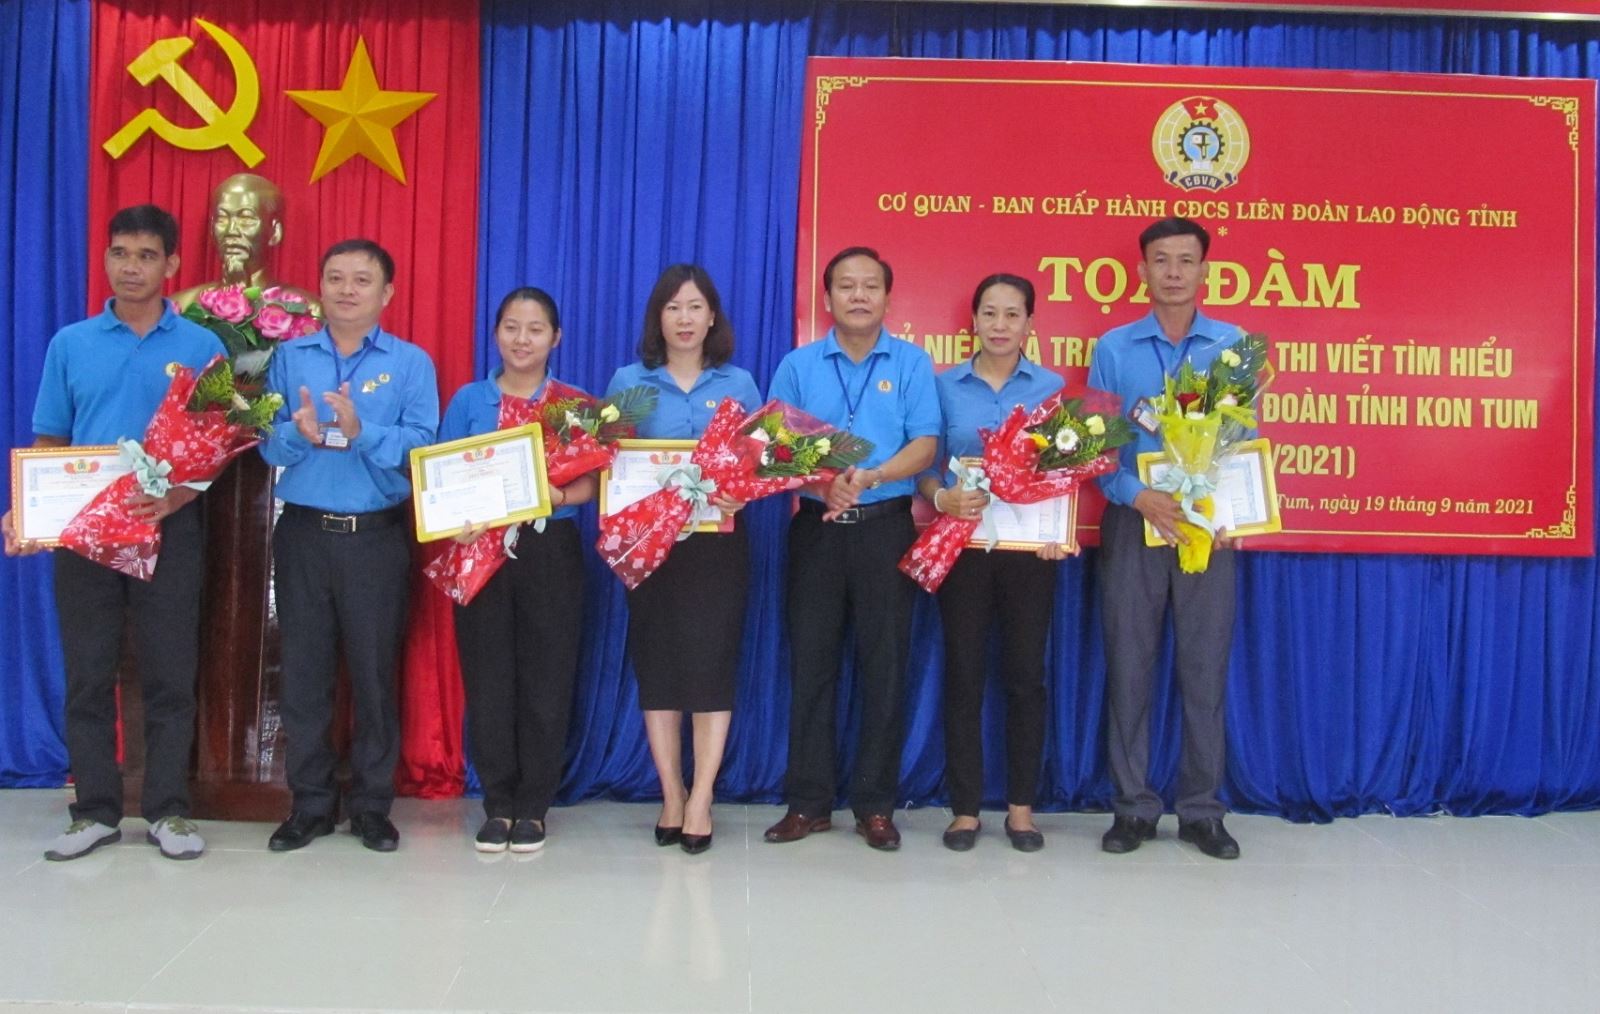 Công đoàn cơ sở Liên đoàn Lao động tỉnh tổ chức tọa đàm kỷ niệm và tổng kết cuộc thi viết tìm hiểu 30 năm thành lập lại Công đoàn tỉnh Kon Tum, ngày 19/9/1991-19/9/2021